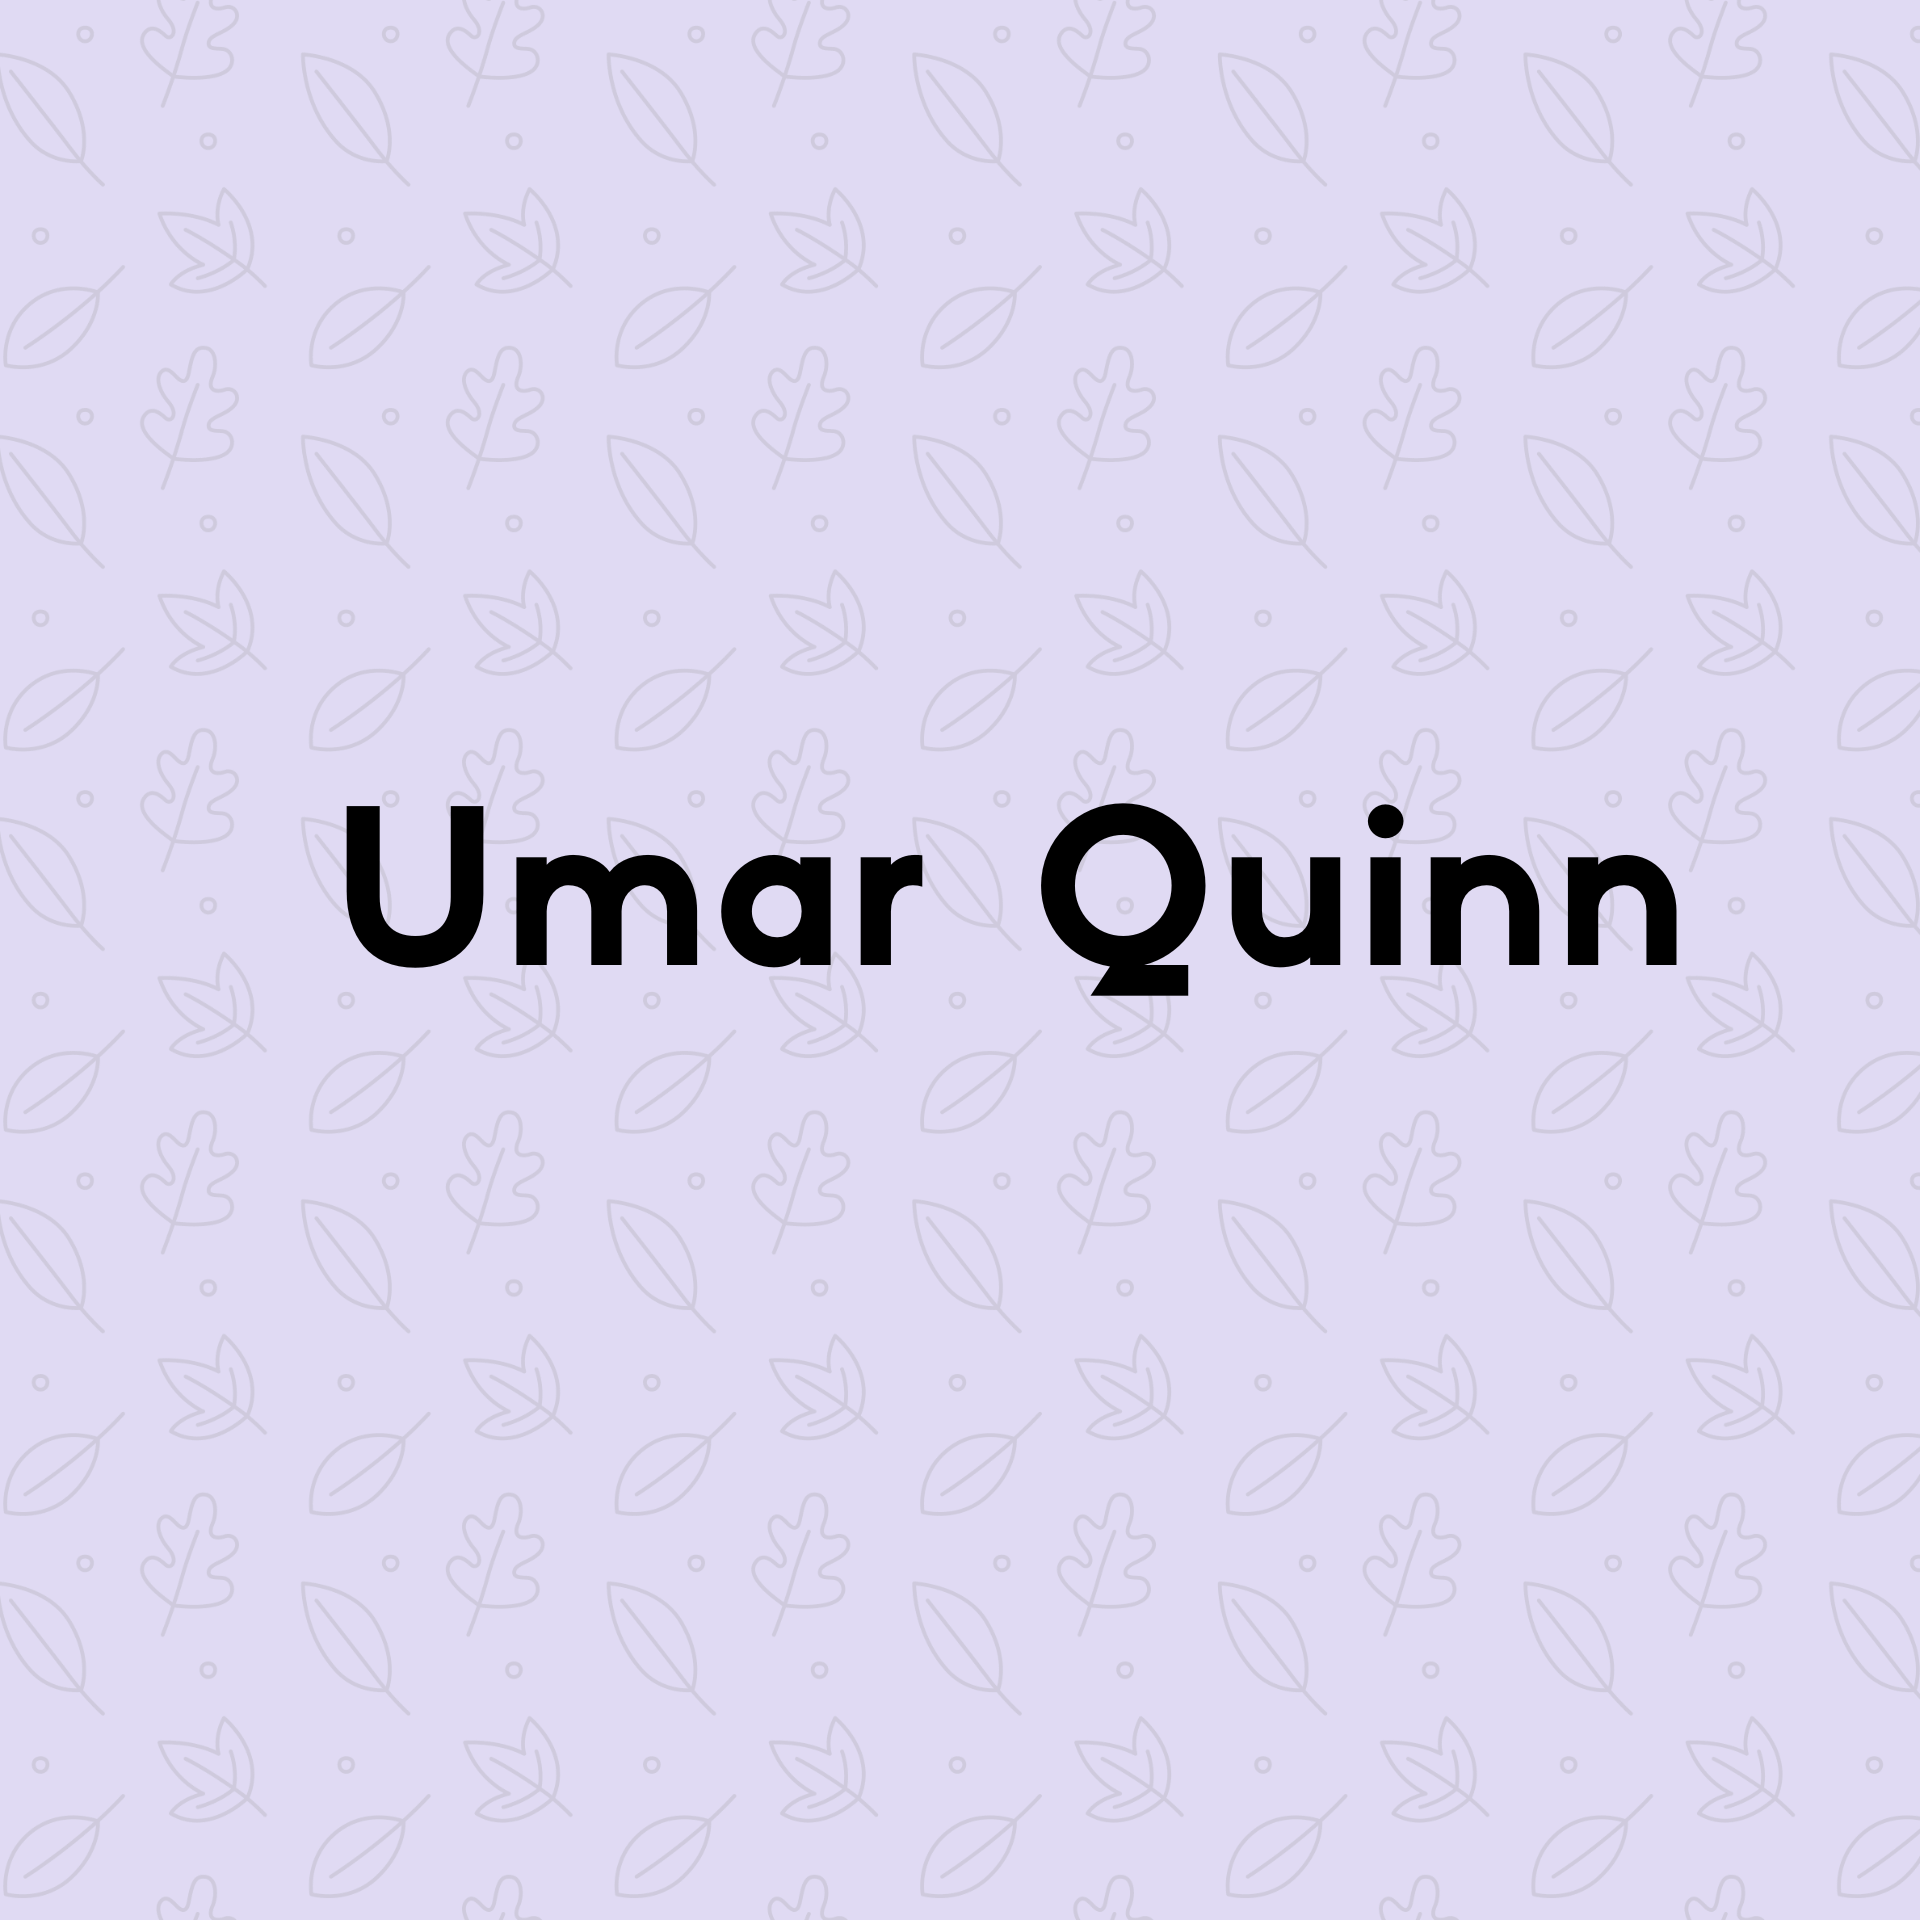  Umar Quinn